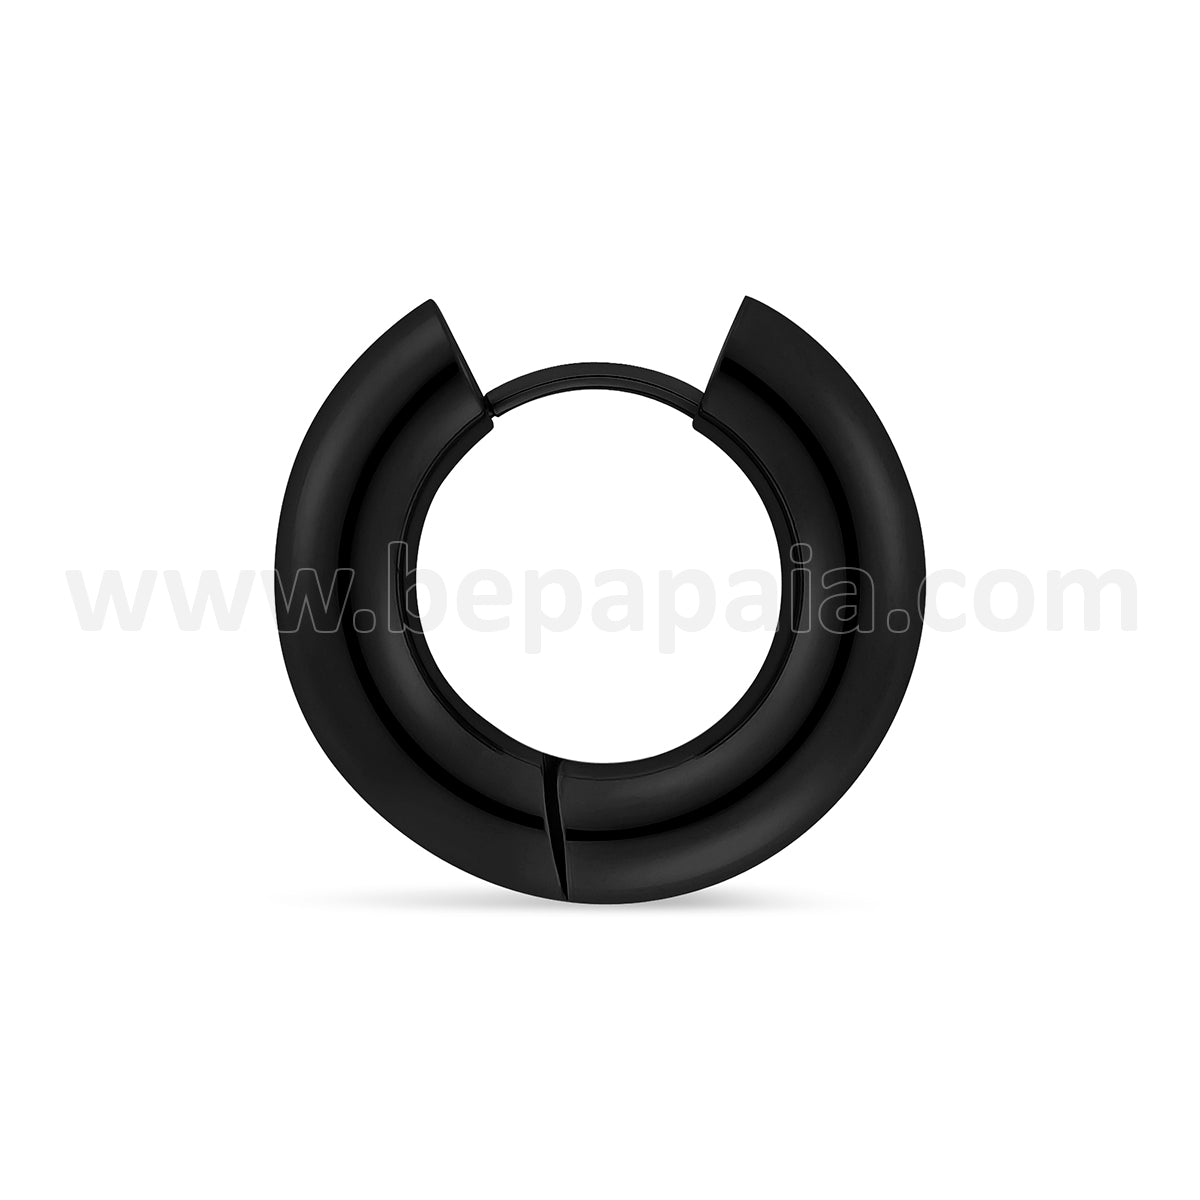 Stainless steel and black steel hoop earring 4 & 5 mm